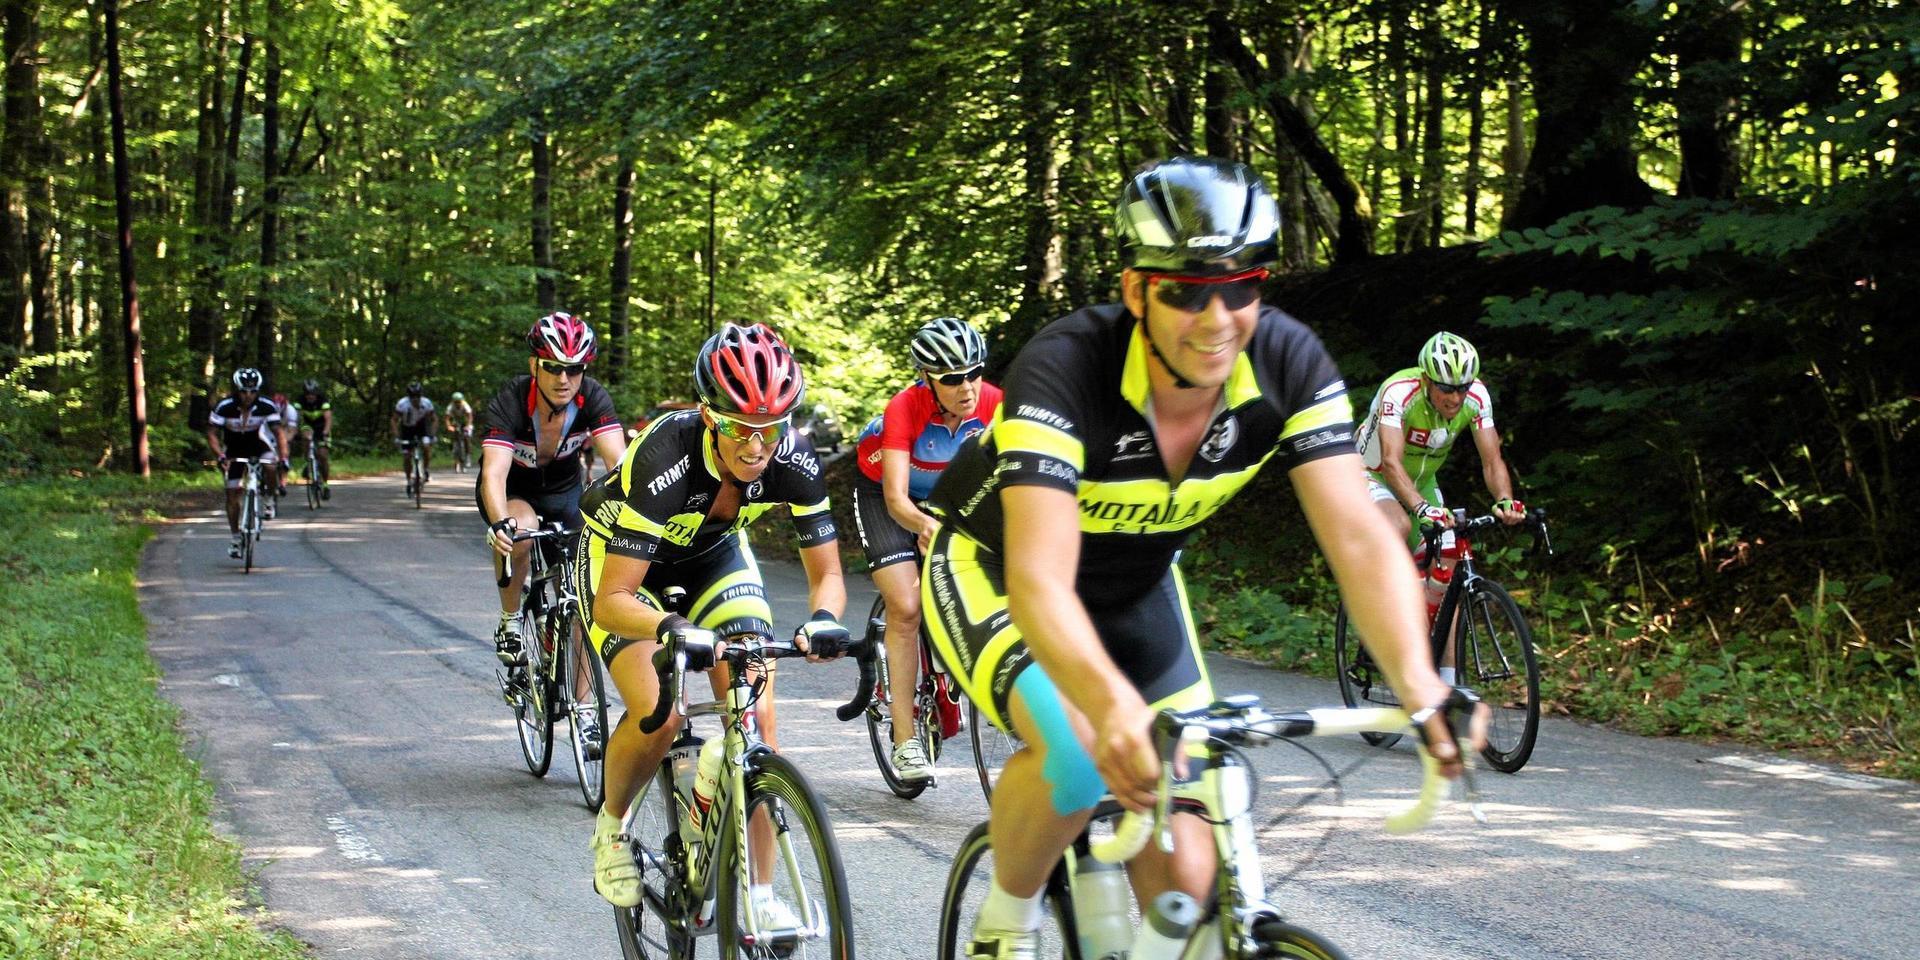 Cyklisterna som deltar Båstad 198 ska bland annat ta sig an de branta backarna i Hasslöv, som också har använts av Motions 6-dagars. Men den första upplagan av det nya internationella cykelloppet har ställs in på grund av coronapandemin. Nytt datum nästa år är ännu inte bestämt.